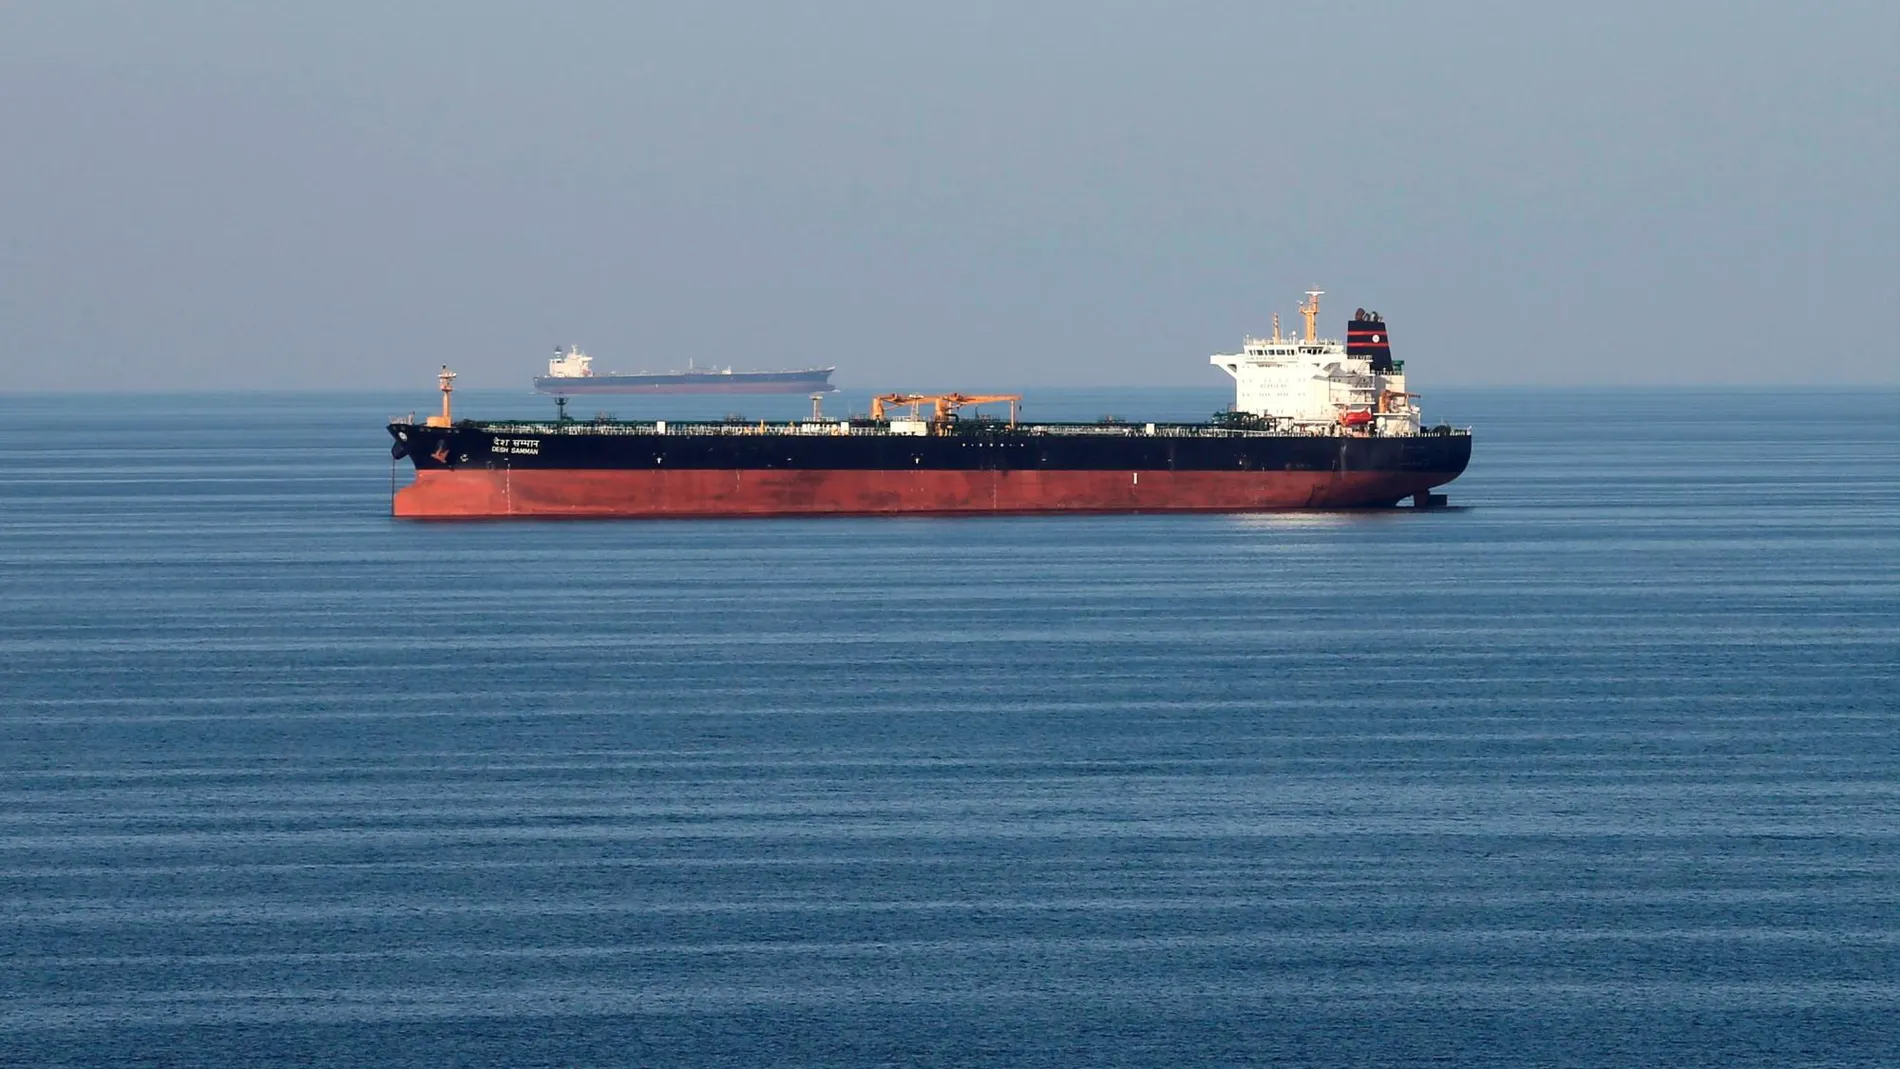 El barco intentaba llevar combustible de contrabando a algunos países árabes.